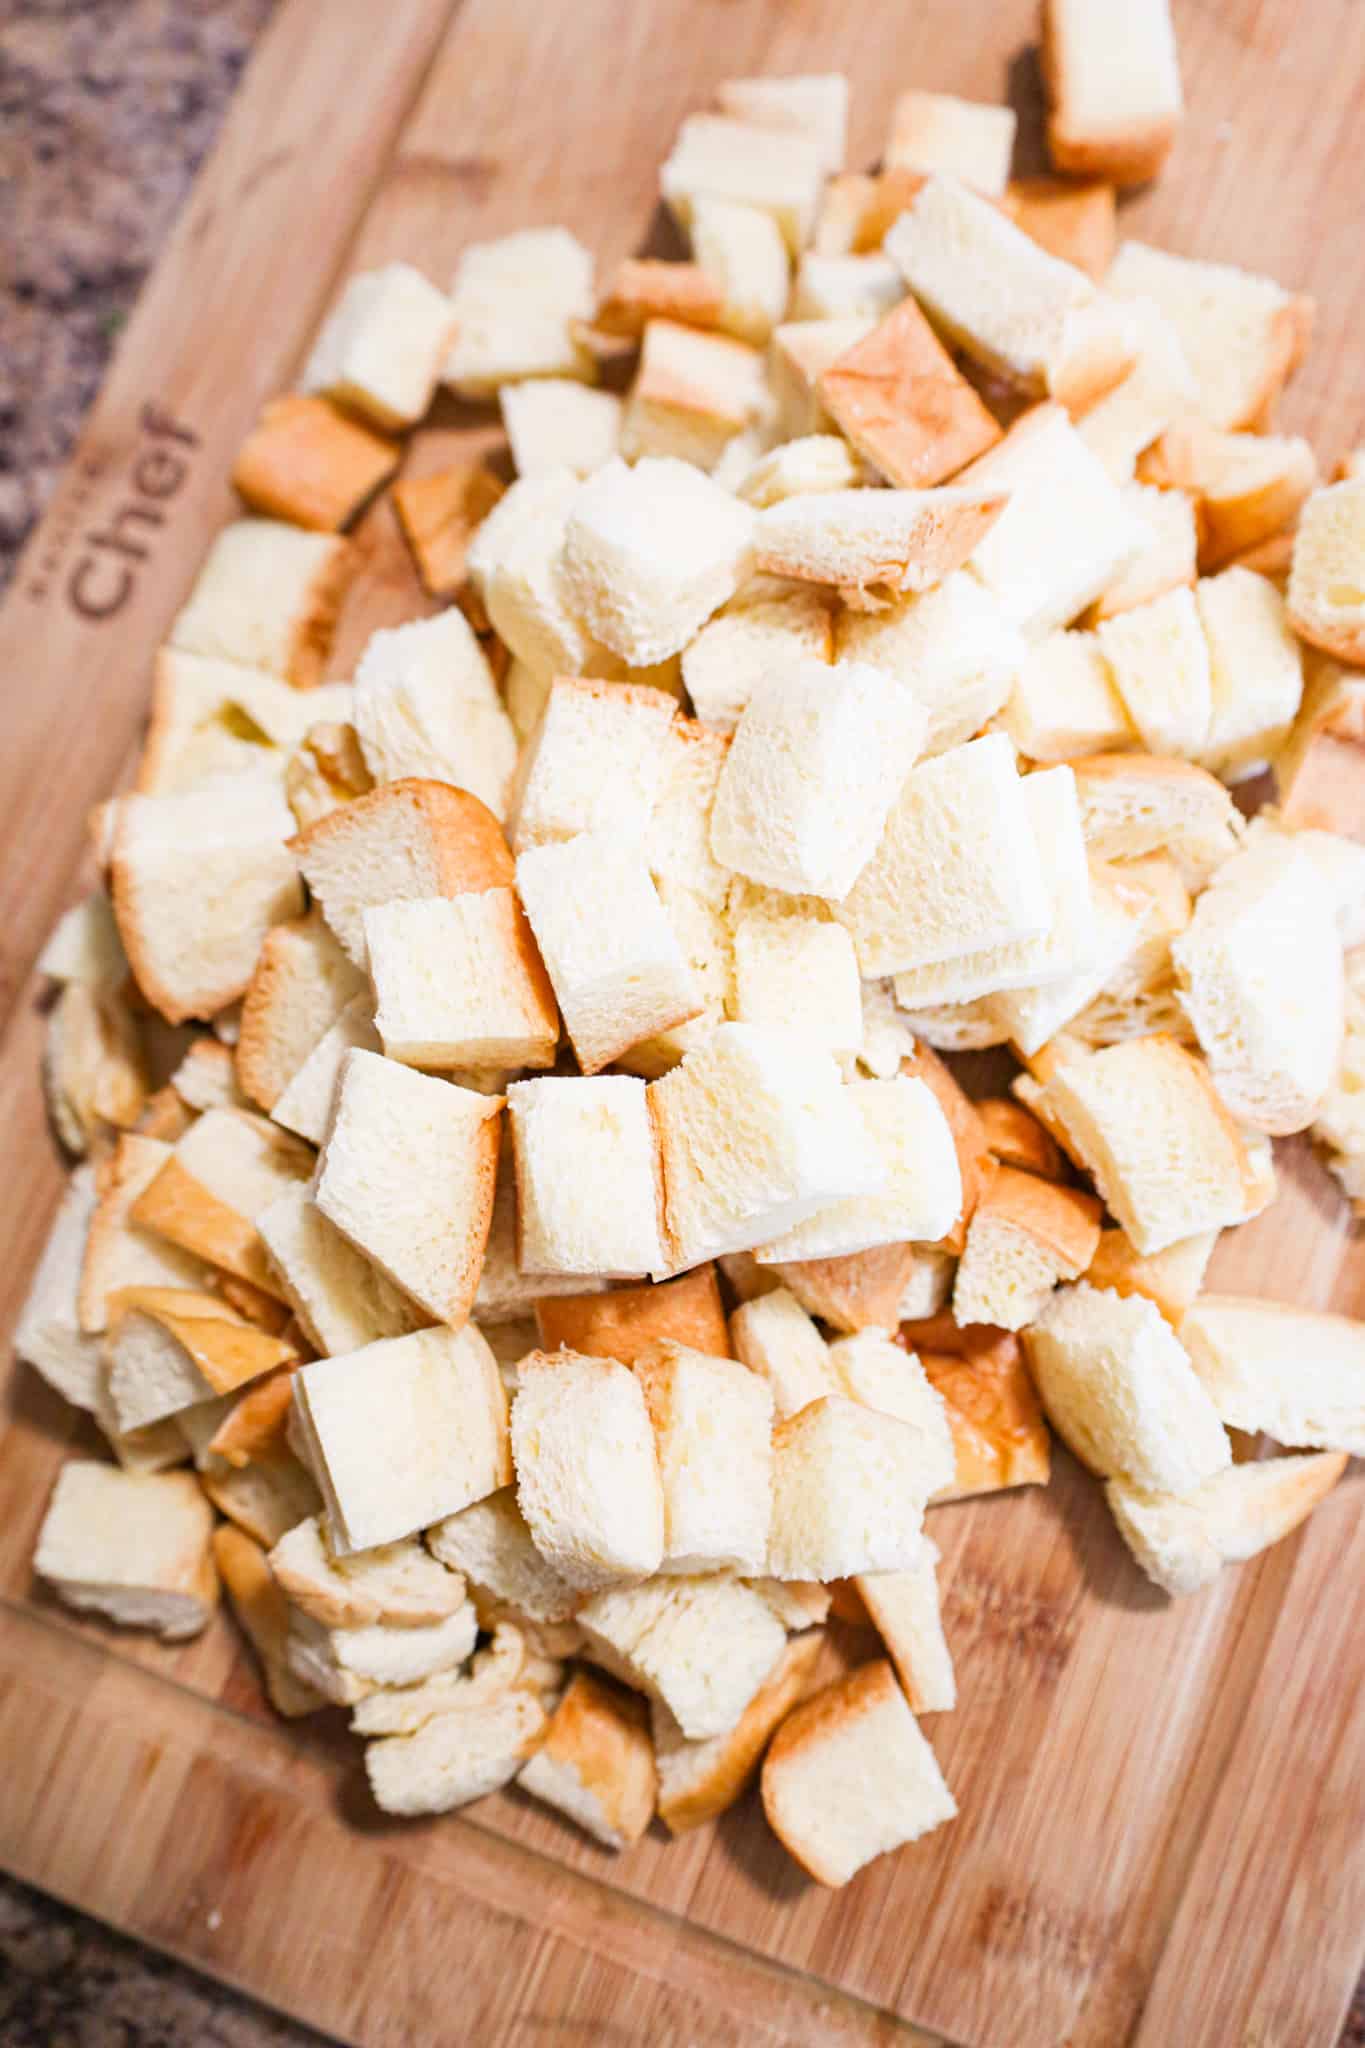 cubed brioche bread on a cutting board